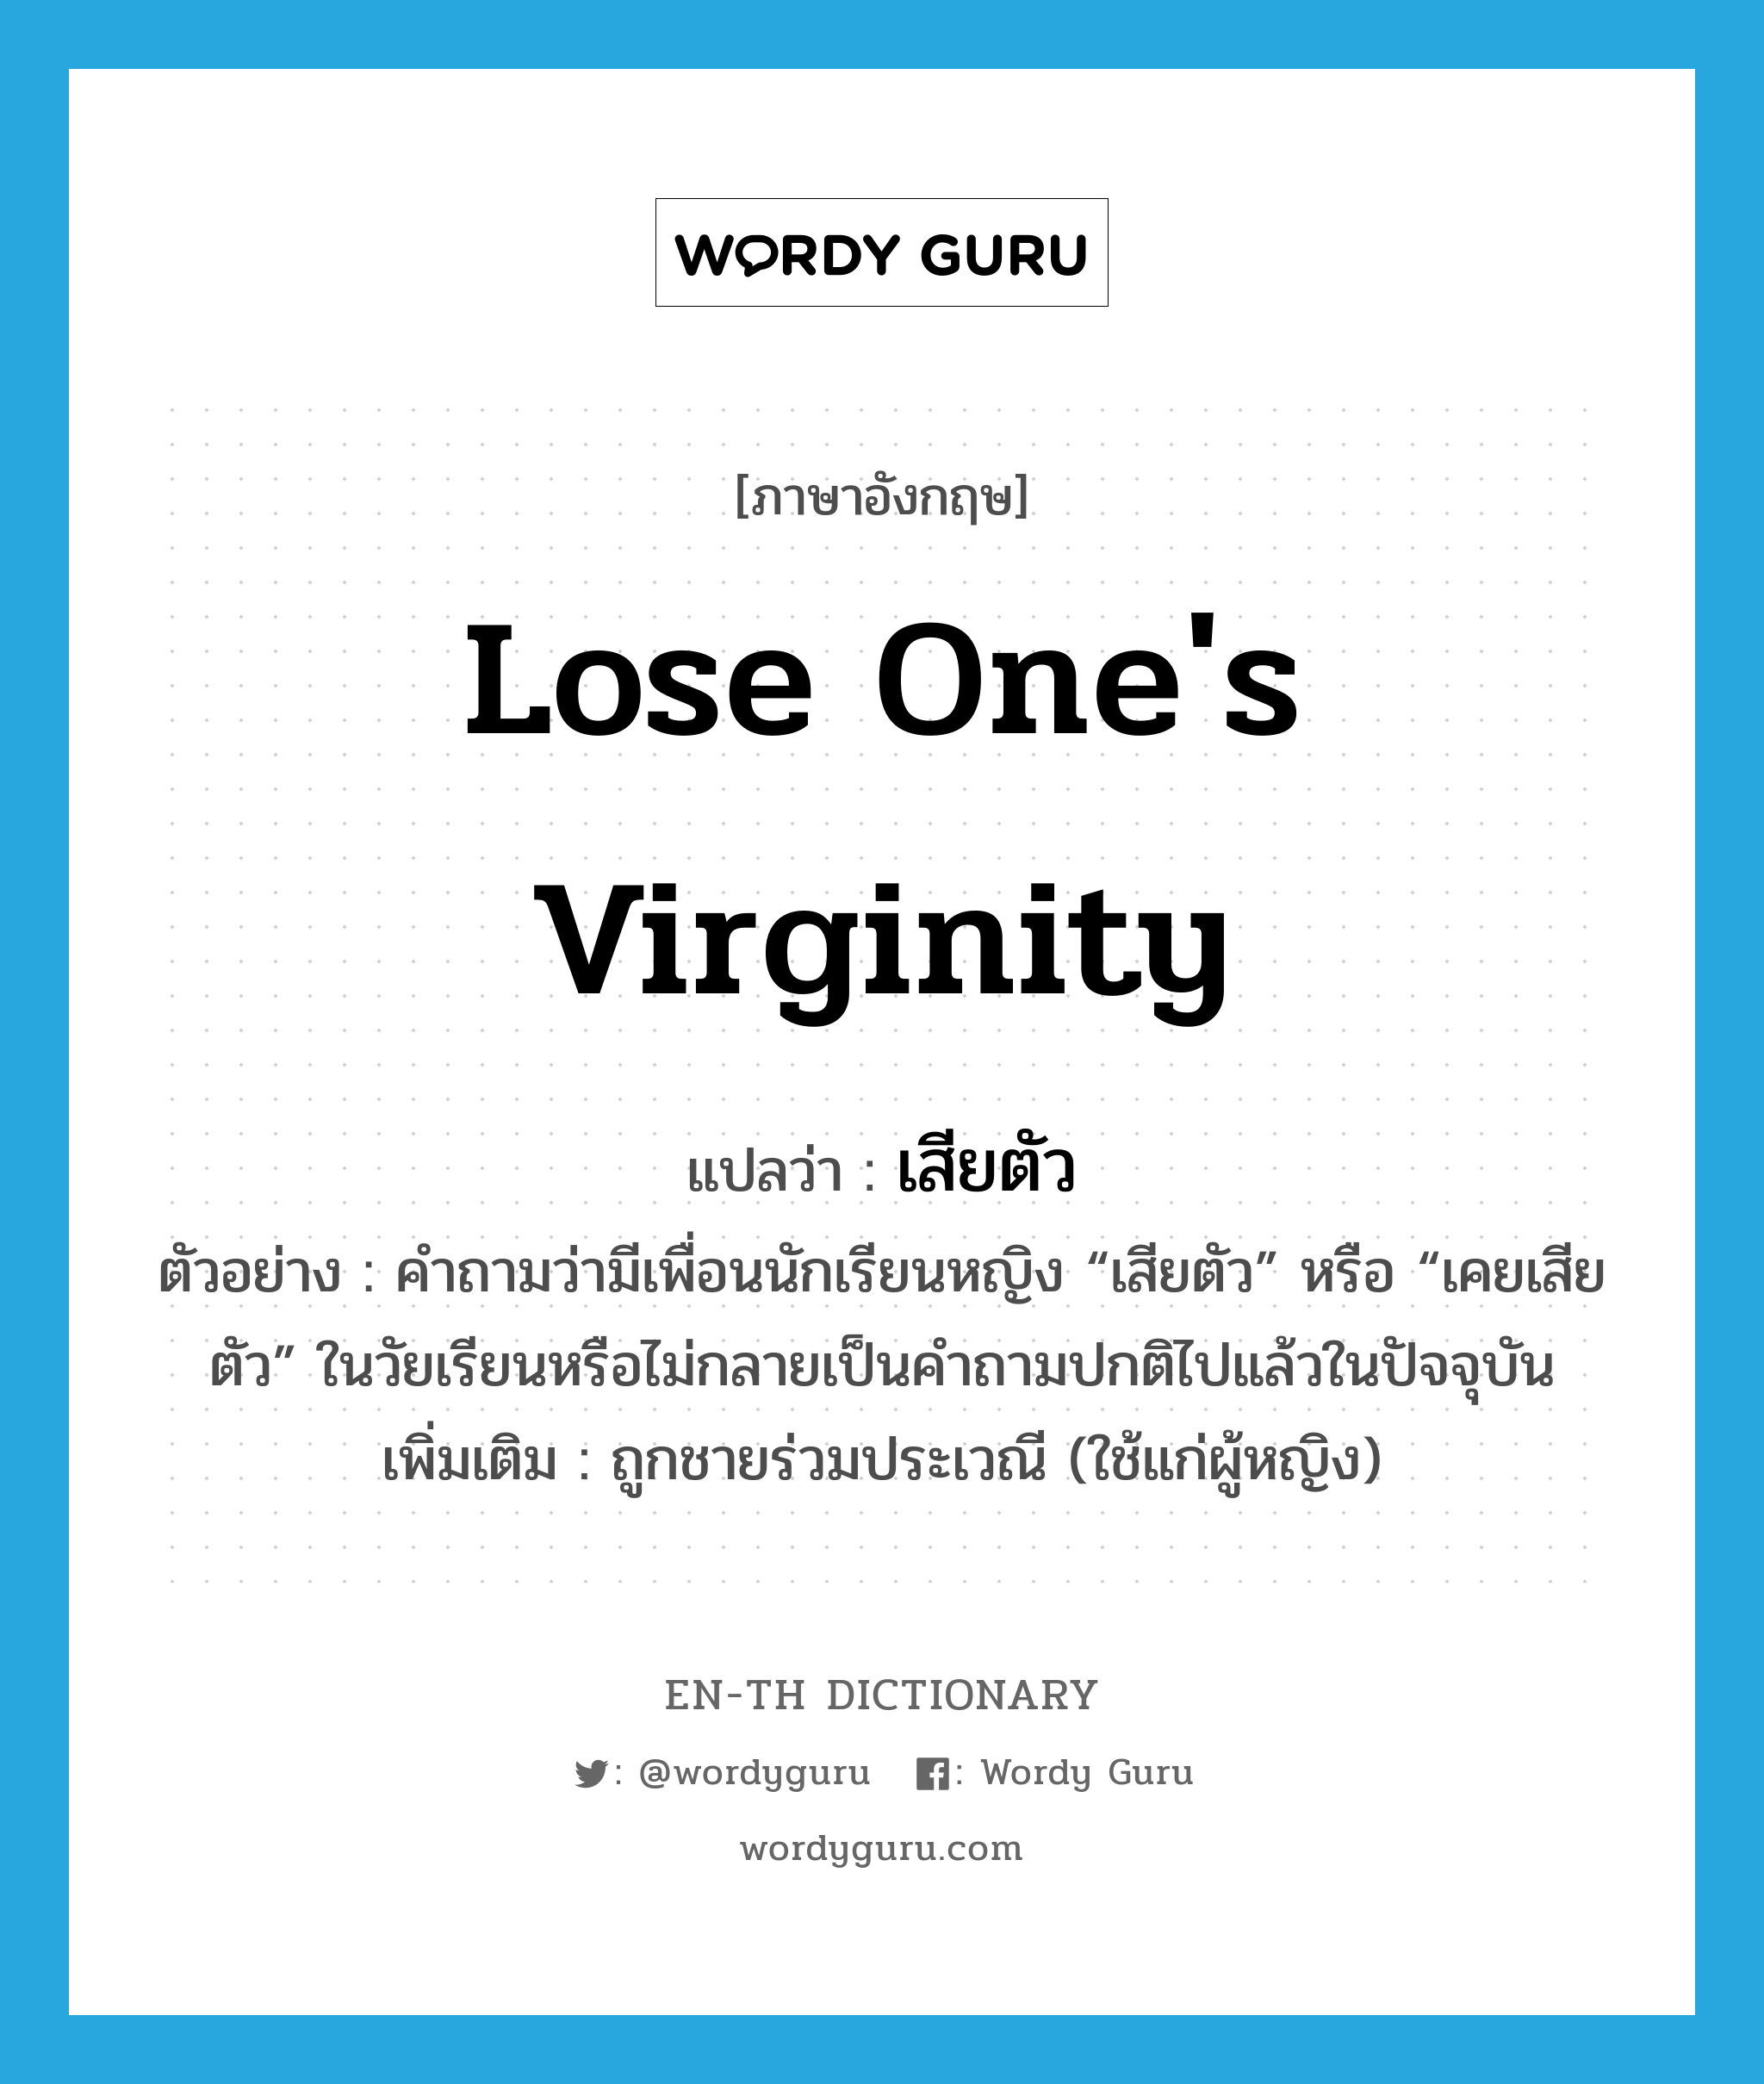 lose one's virginity แปลว่า?, คำศัพท์ภาษาอังกฤษ lose one's virginity แปลว่า เสียตัว ประเภท V ตัวอย่าง คำถามว่ามีเพื่อนนักเรียนหญิง “เสียตัว” หรือ “เคยเสียตัว” ในวัยเรียนหรือไม่กลายเป็นคำถามปกติไปแล้วในปัจจุบัน เพิ่มเติม ถูกชายร่วมประเวณี (ใช้แก่ผู้หญิง) หมวด V